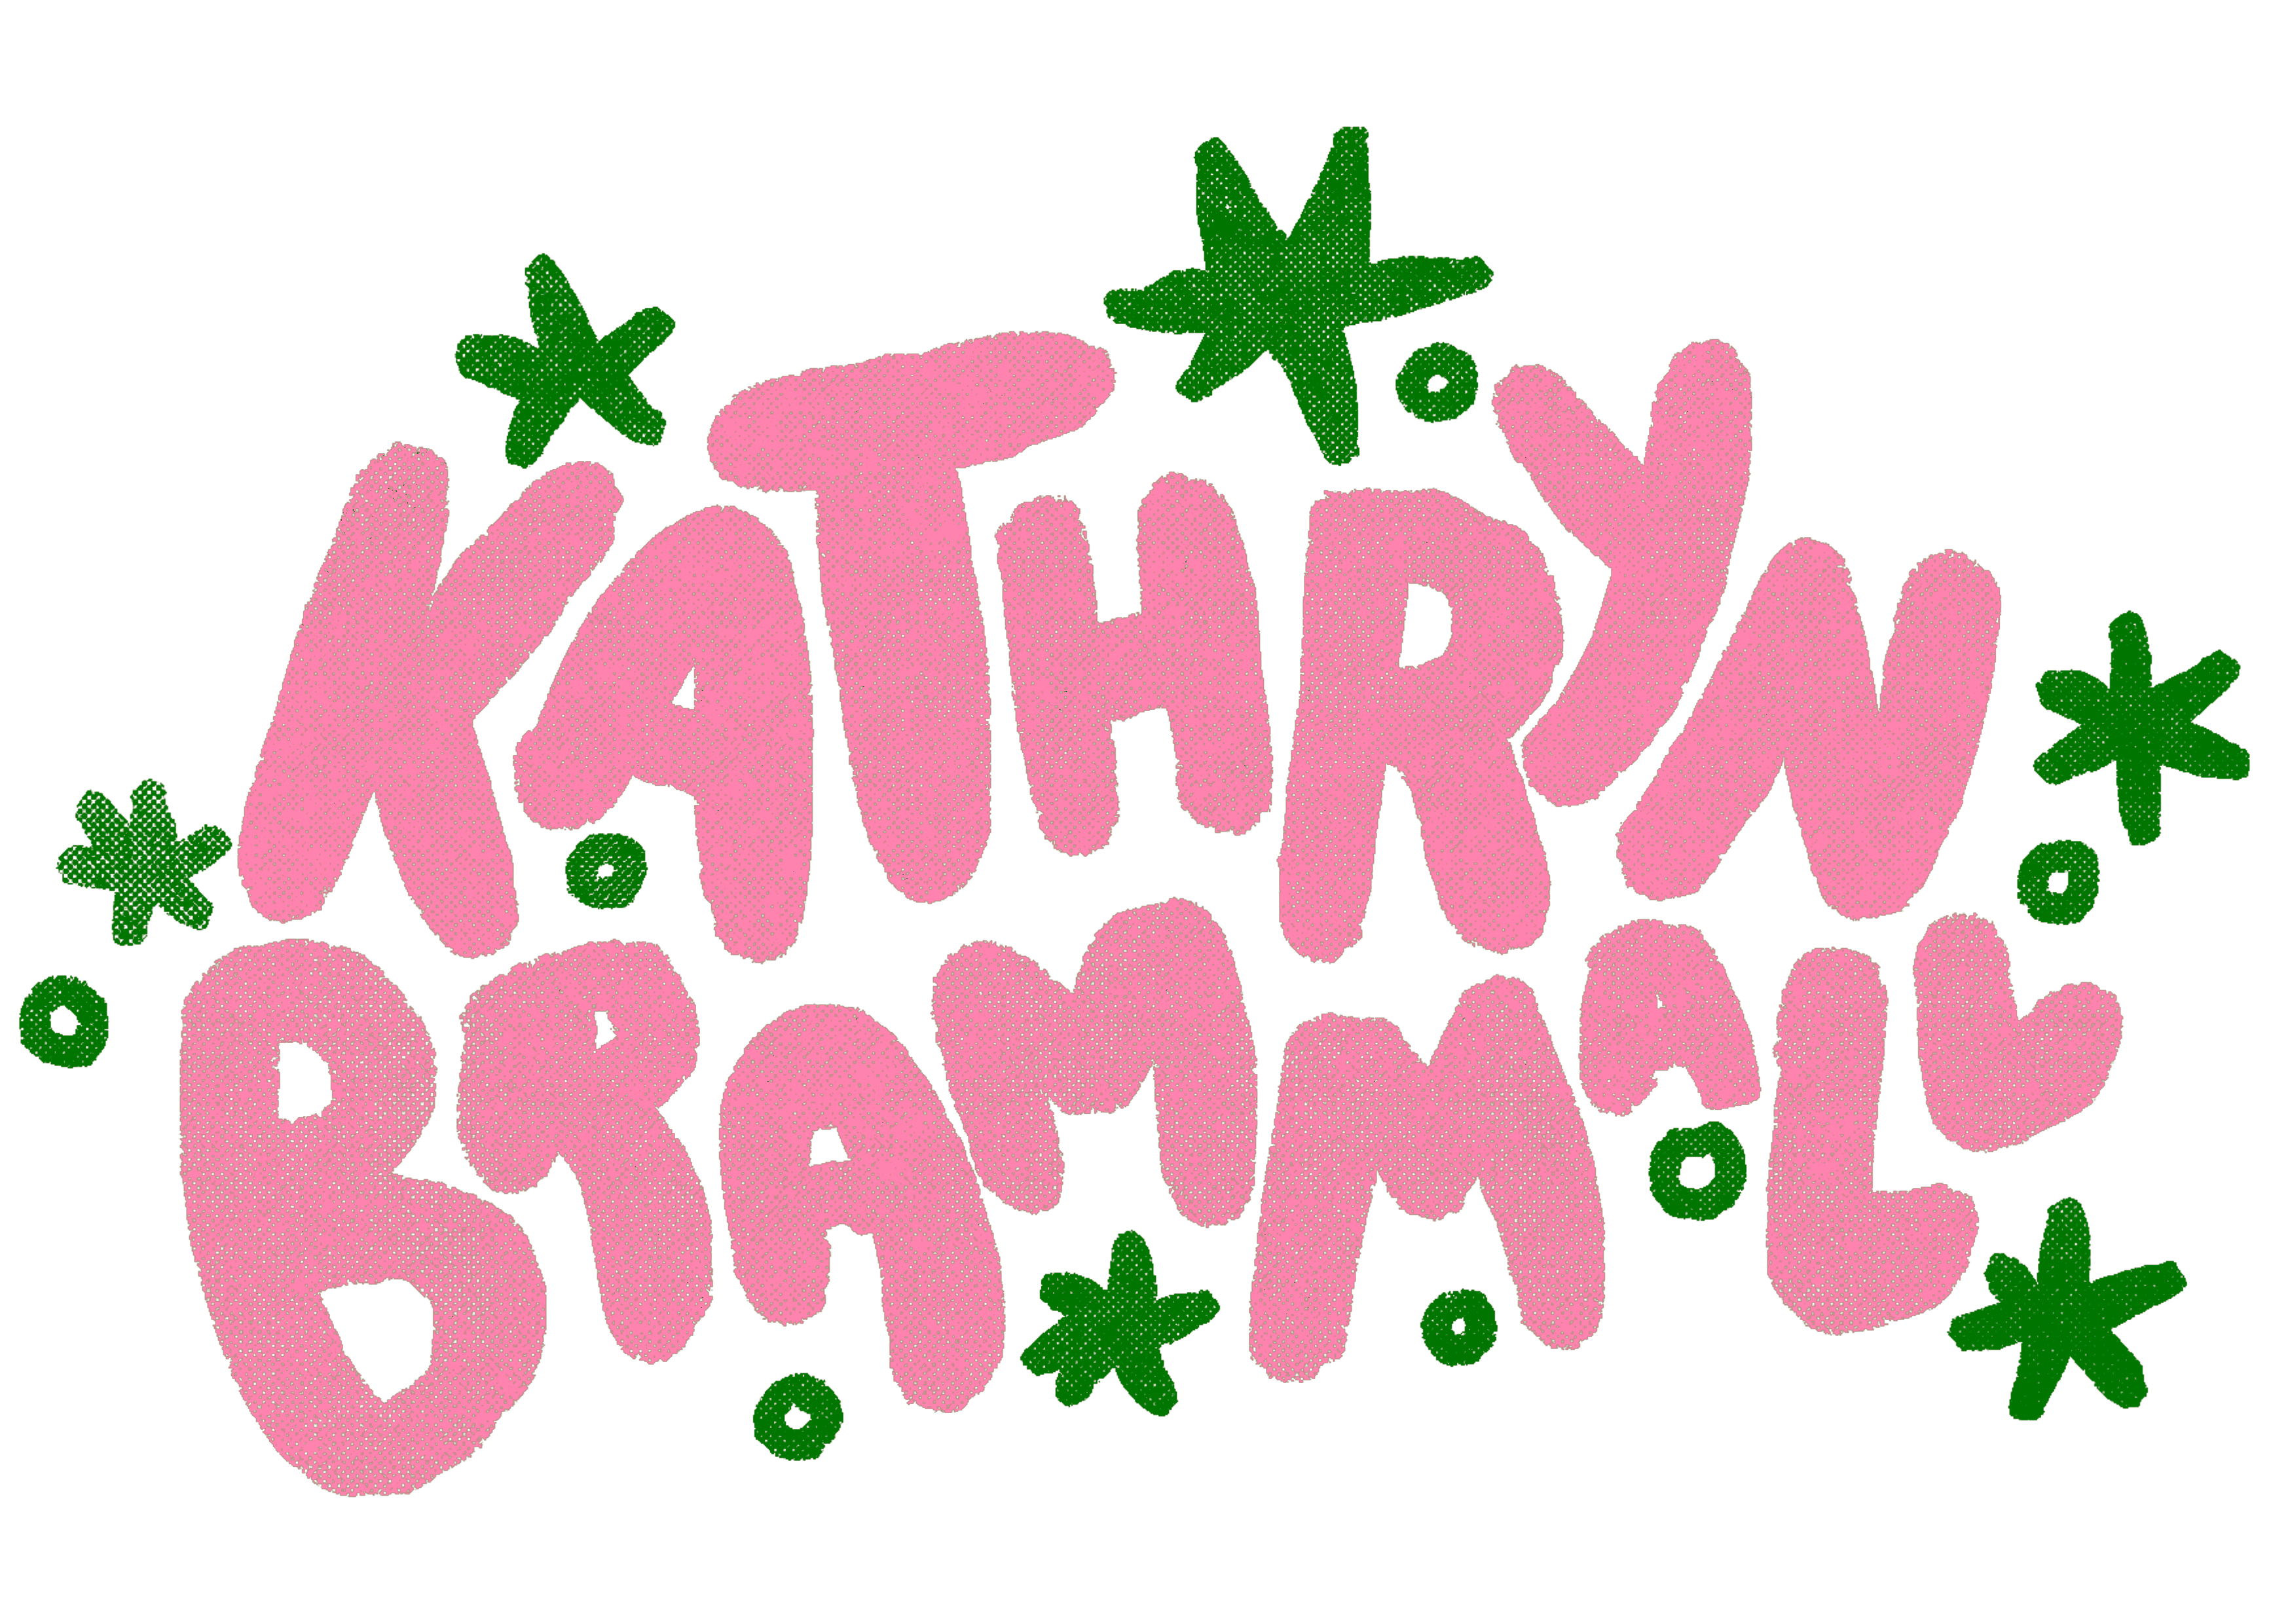 Kathryn Brammall